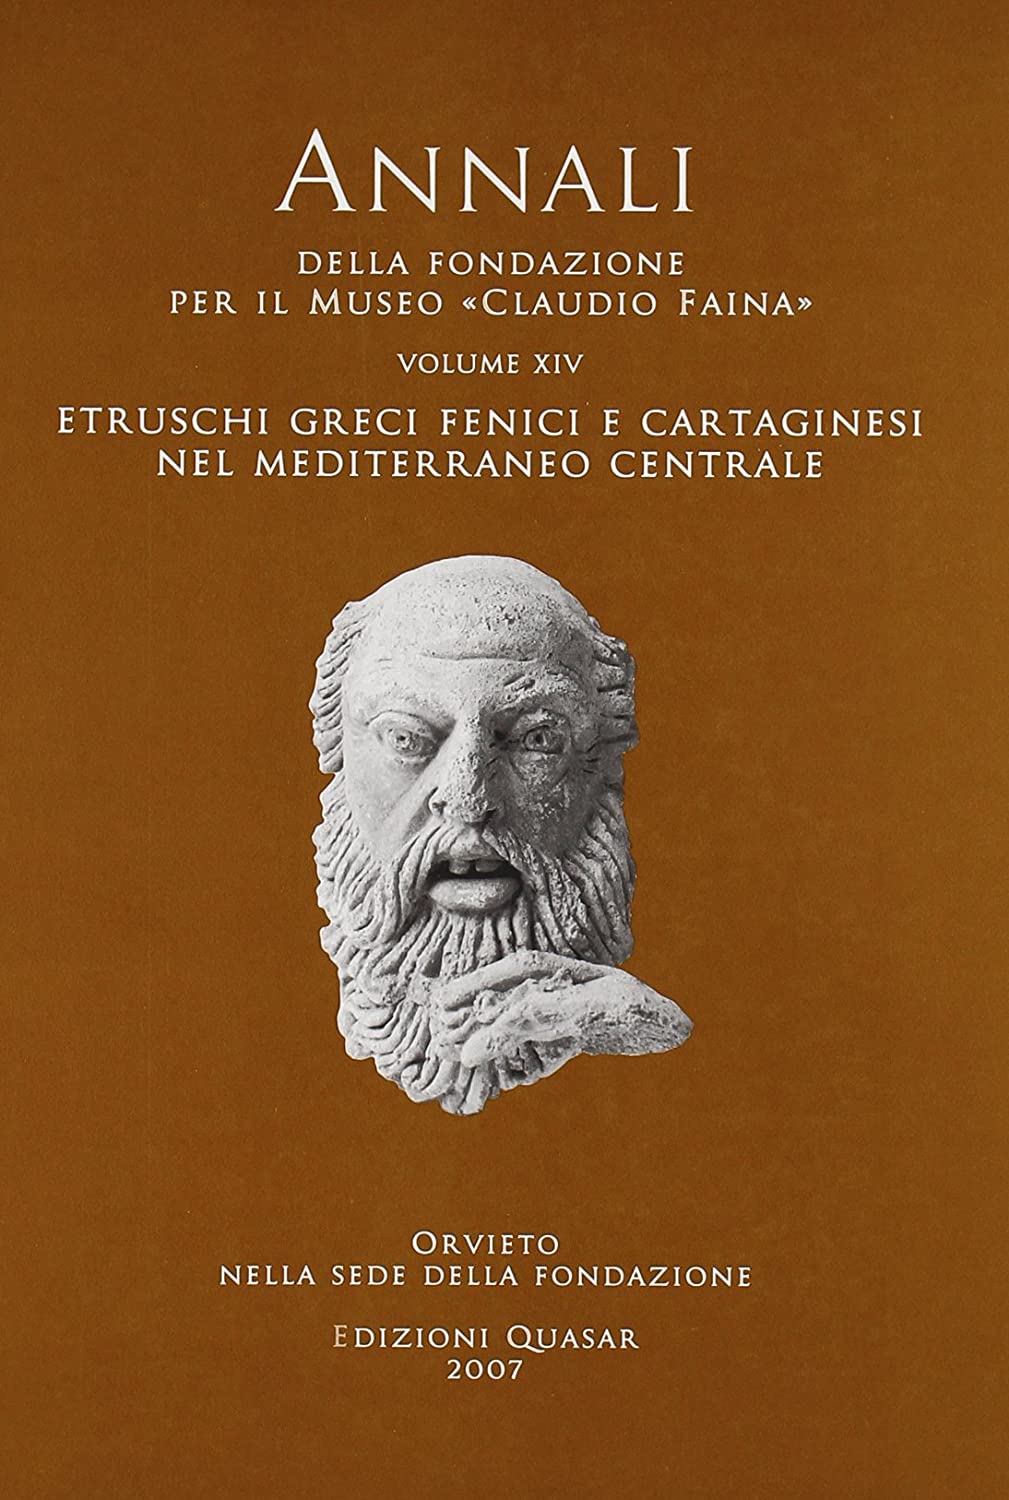 Libri Annali Della Fondazione Per Il Museo Claudio Faina Vol 14 NUOVO SIGILLATO, EDIZIONE DEL 01/01/2007 SUBITO DISPONIBILE